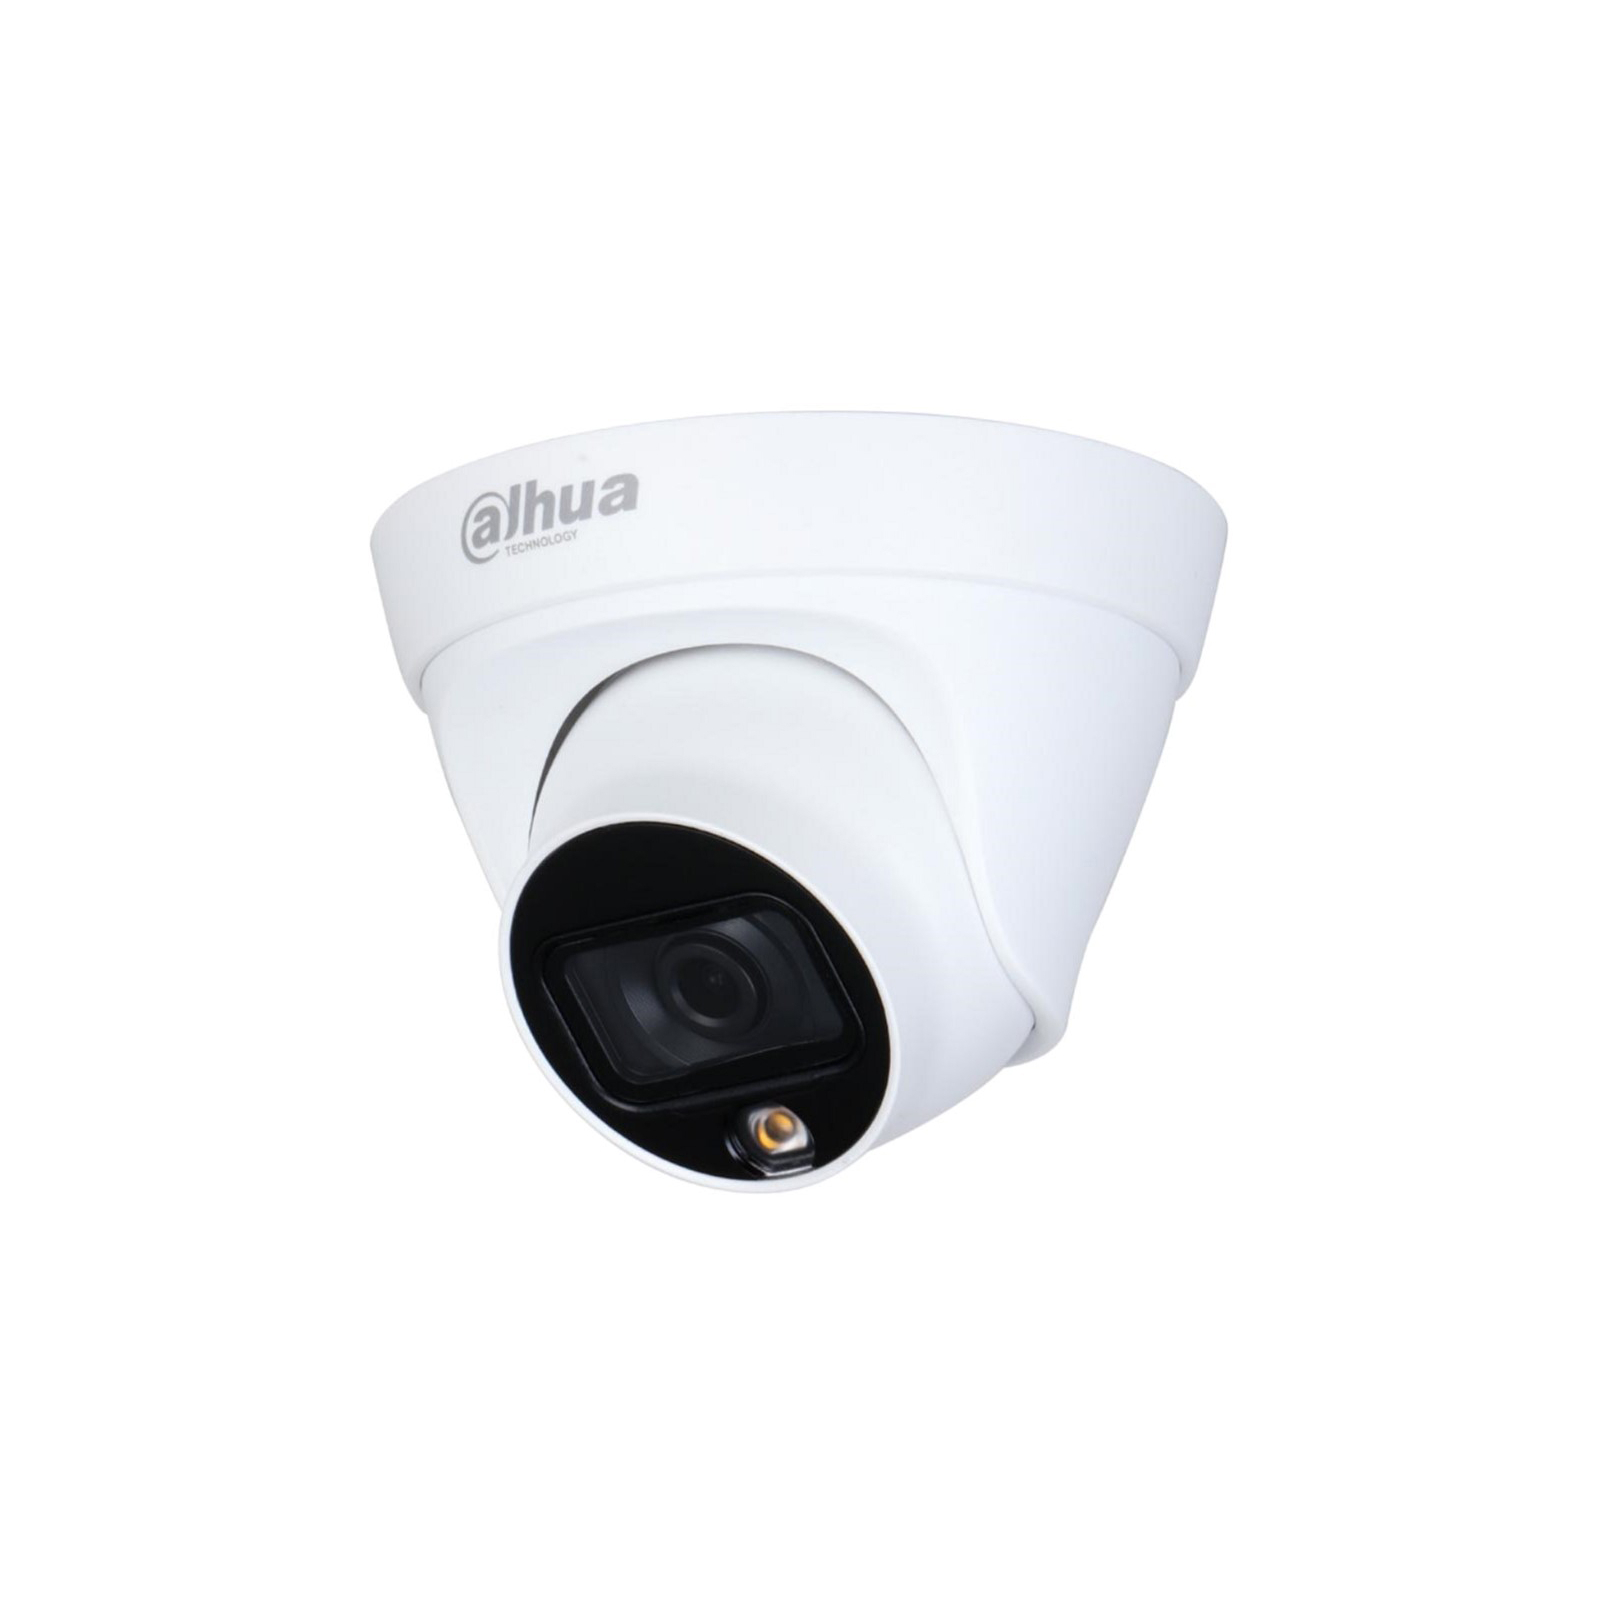 Камера відеоспостереження Dahua DH-IPC-HDW1239T1-LED-S5 (3.6)